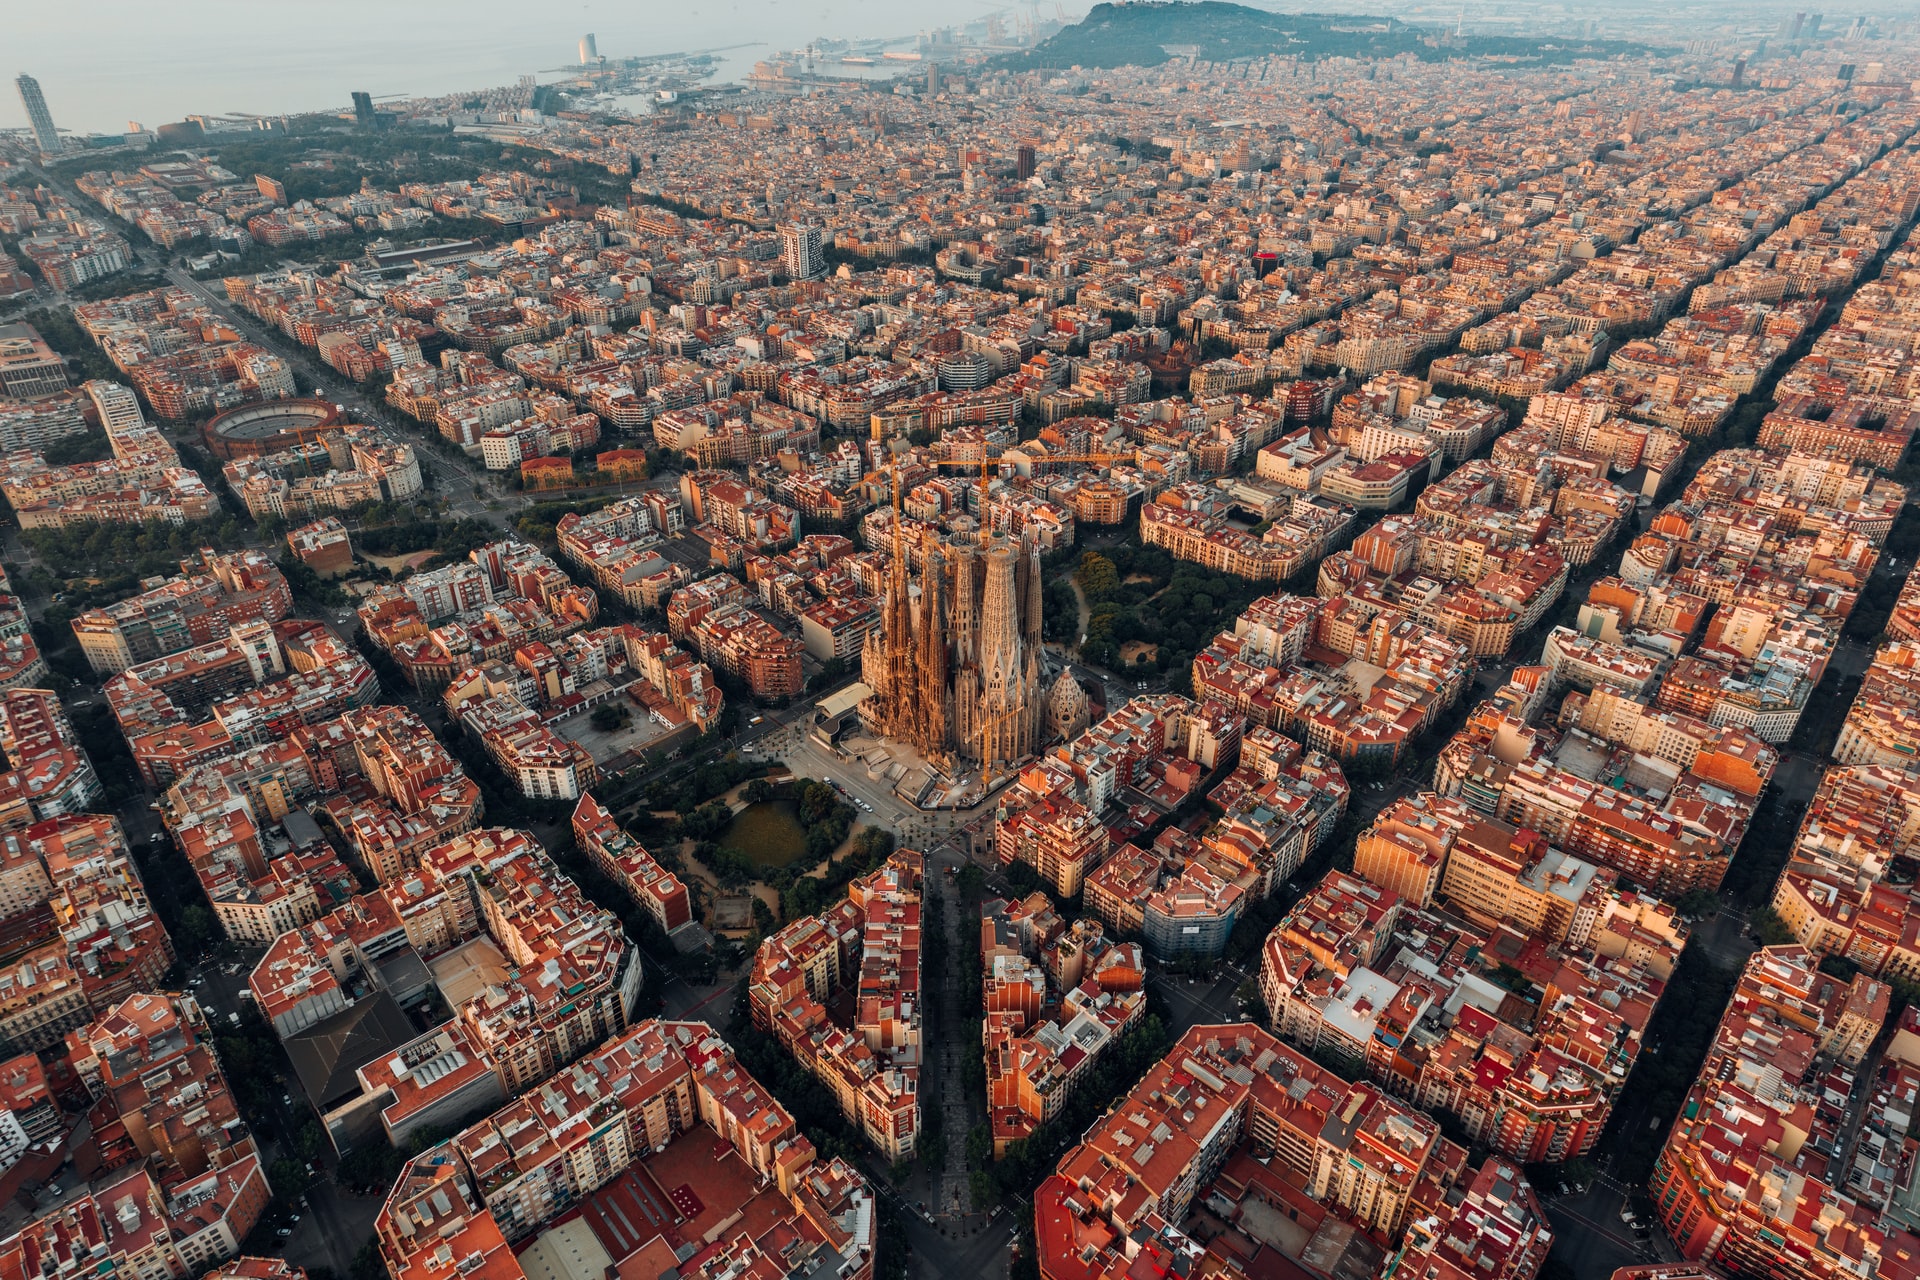 La iglesia de la Sagrada Familia es probablemente la primera imagen que te viene a la mente cuando piensas en Barcelona